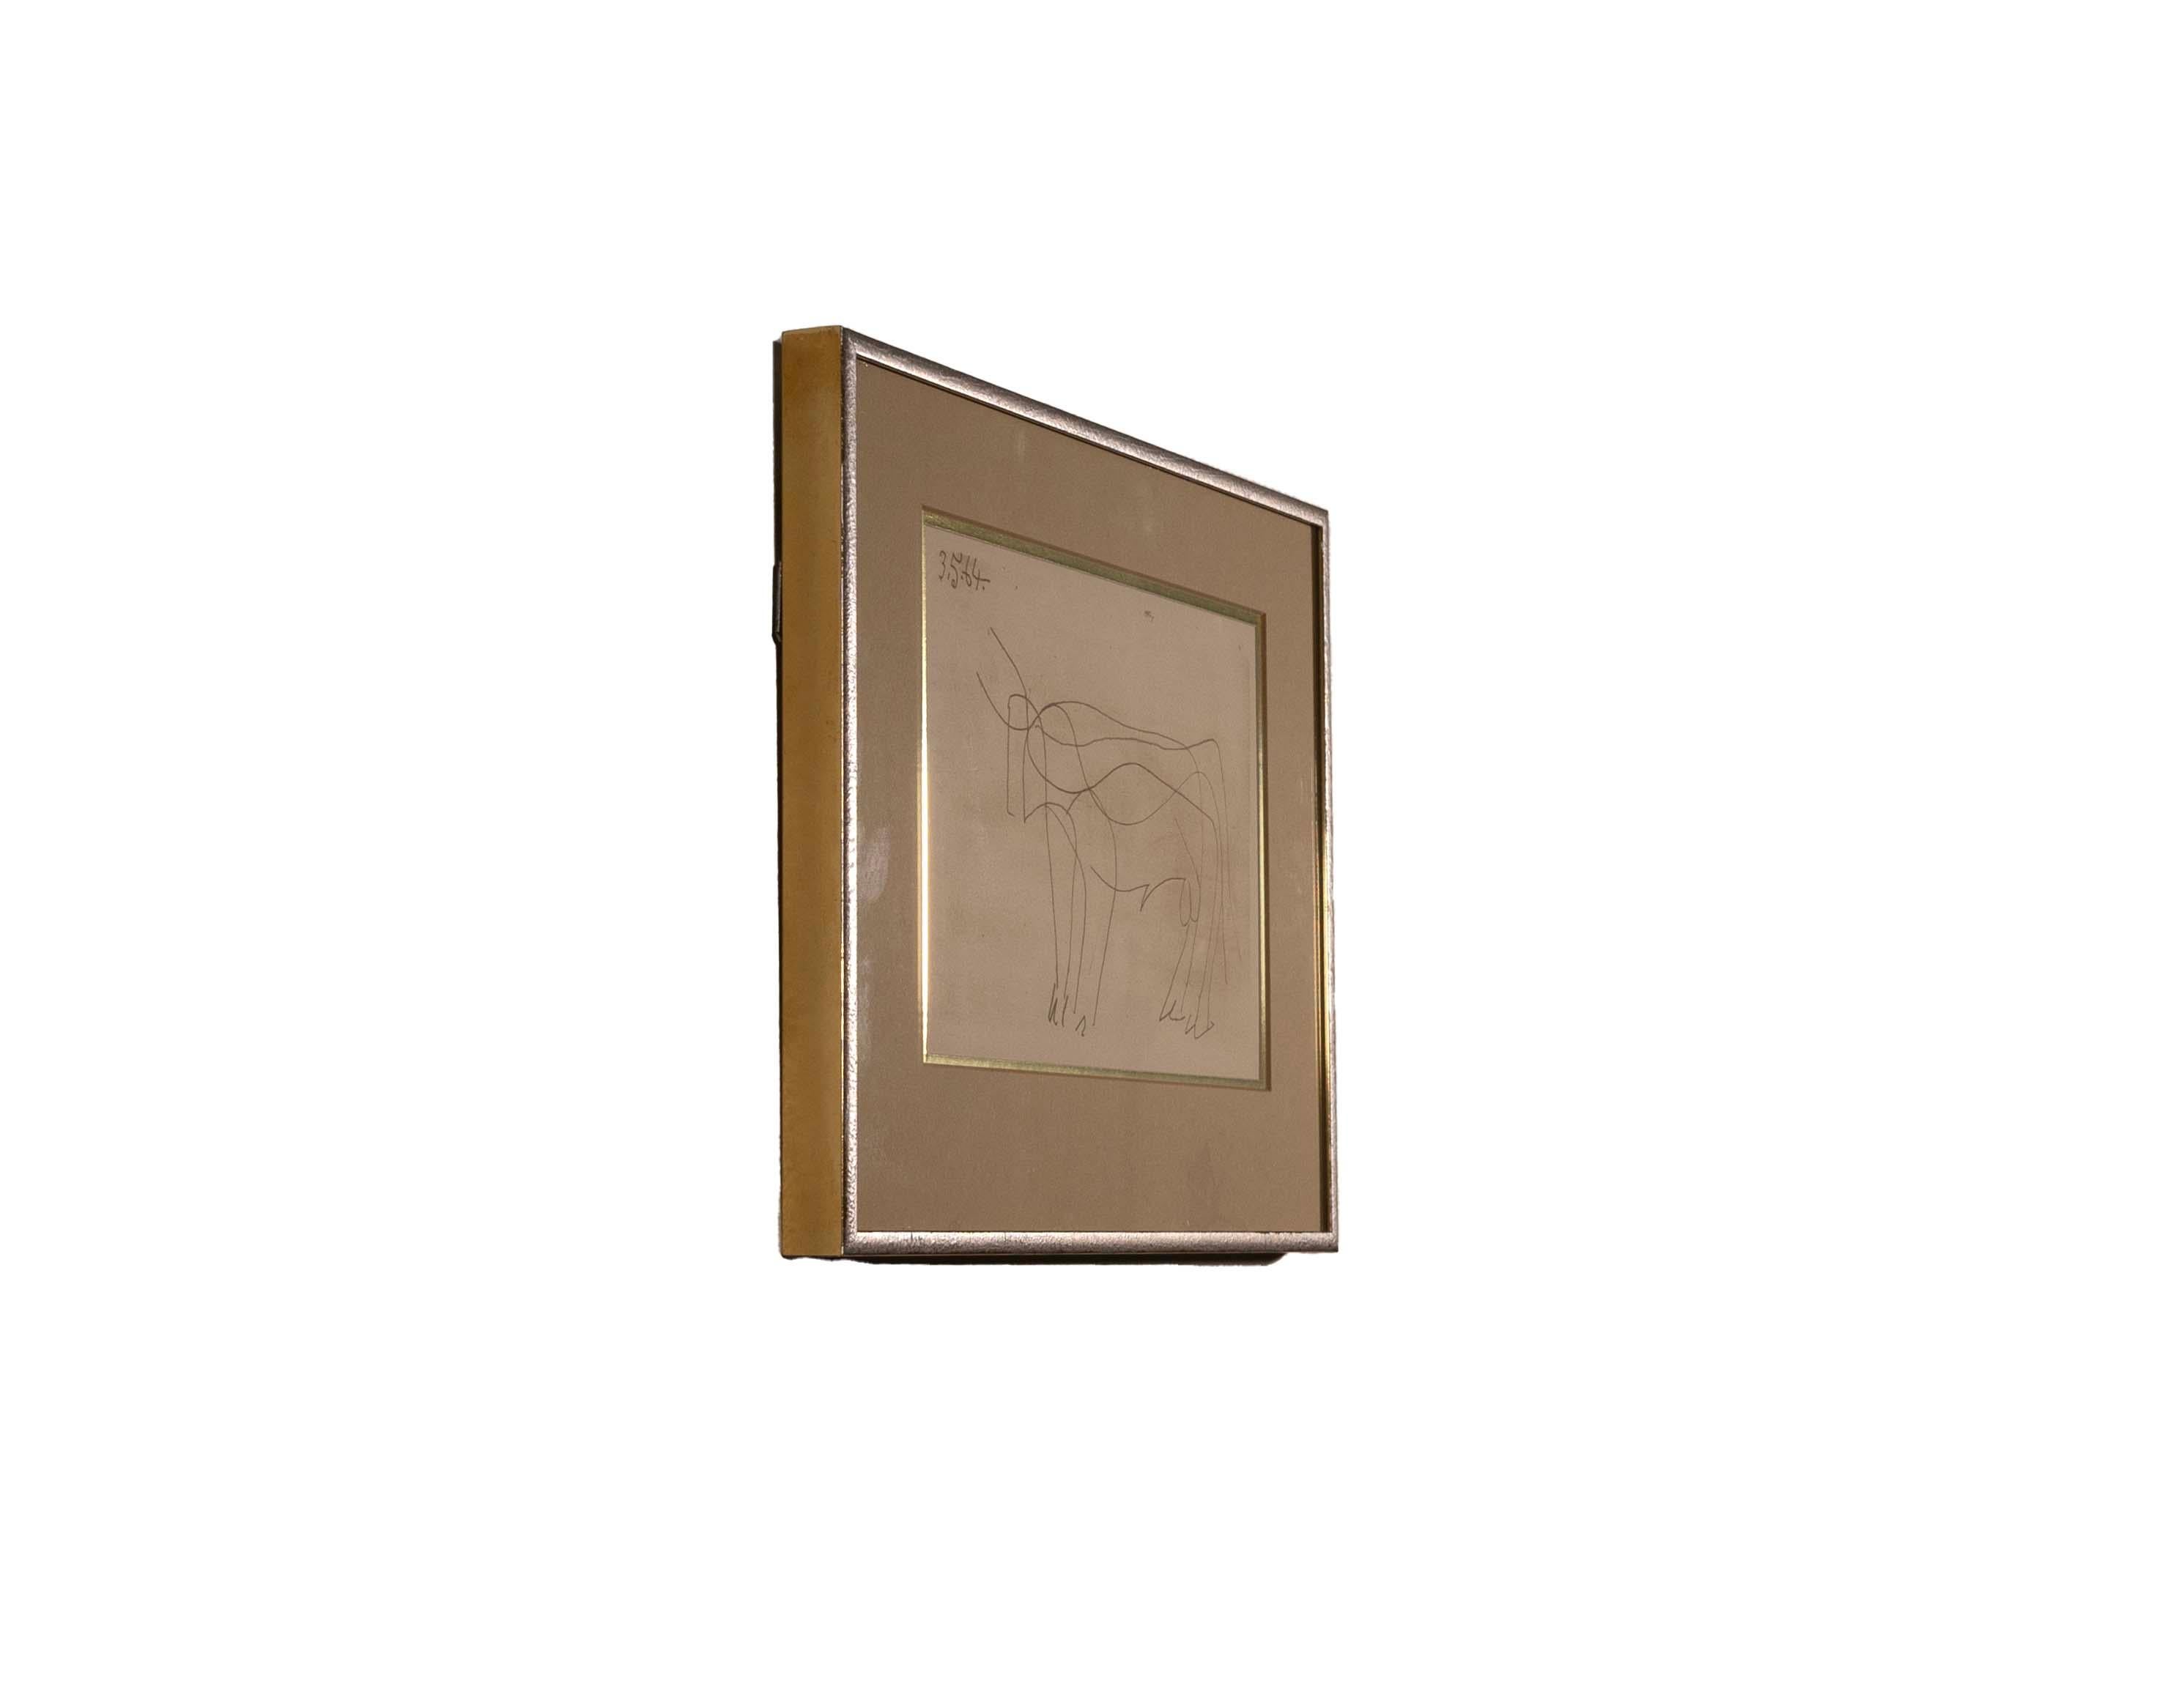 Une lithographie moderne classique sur papier chiffon Arches tissé à la main 